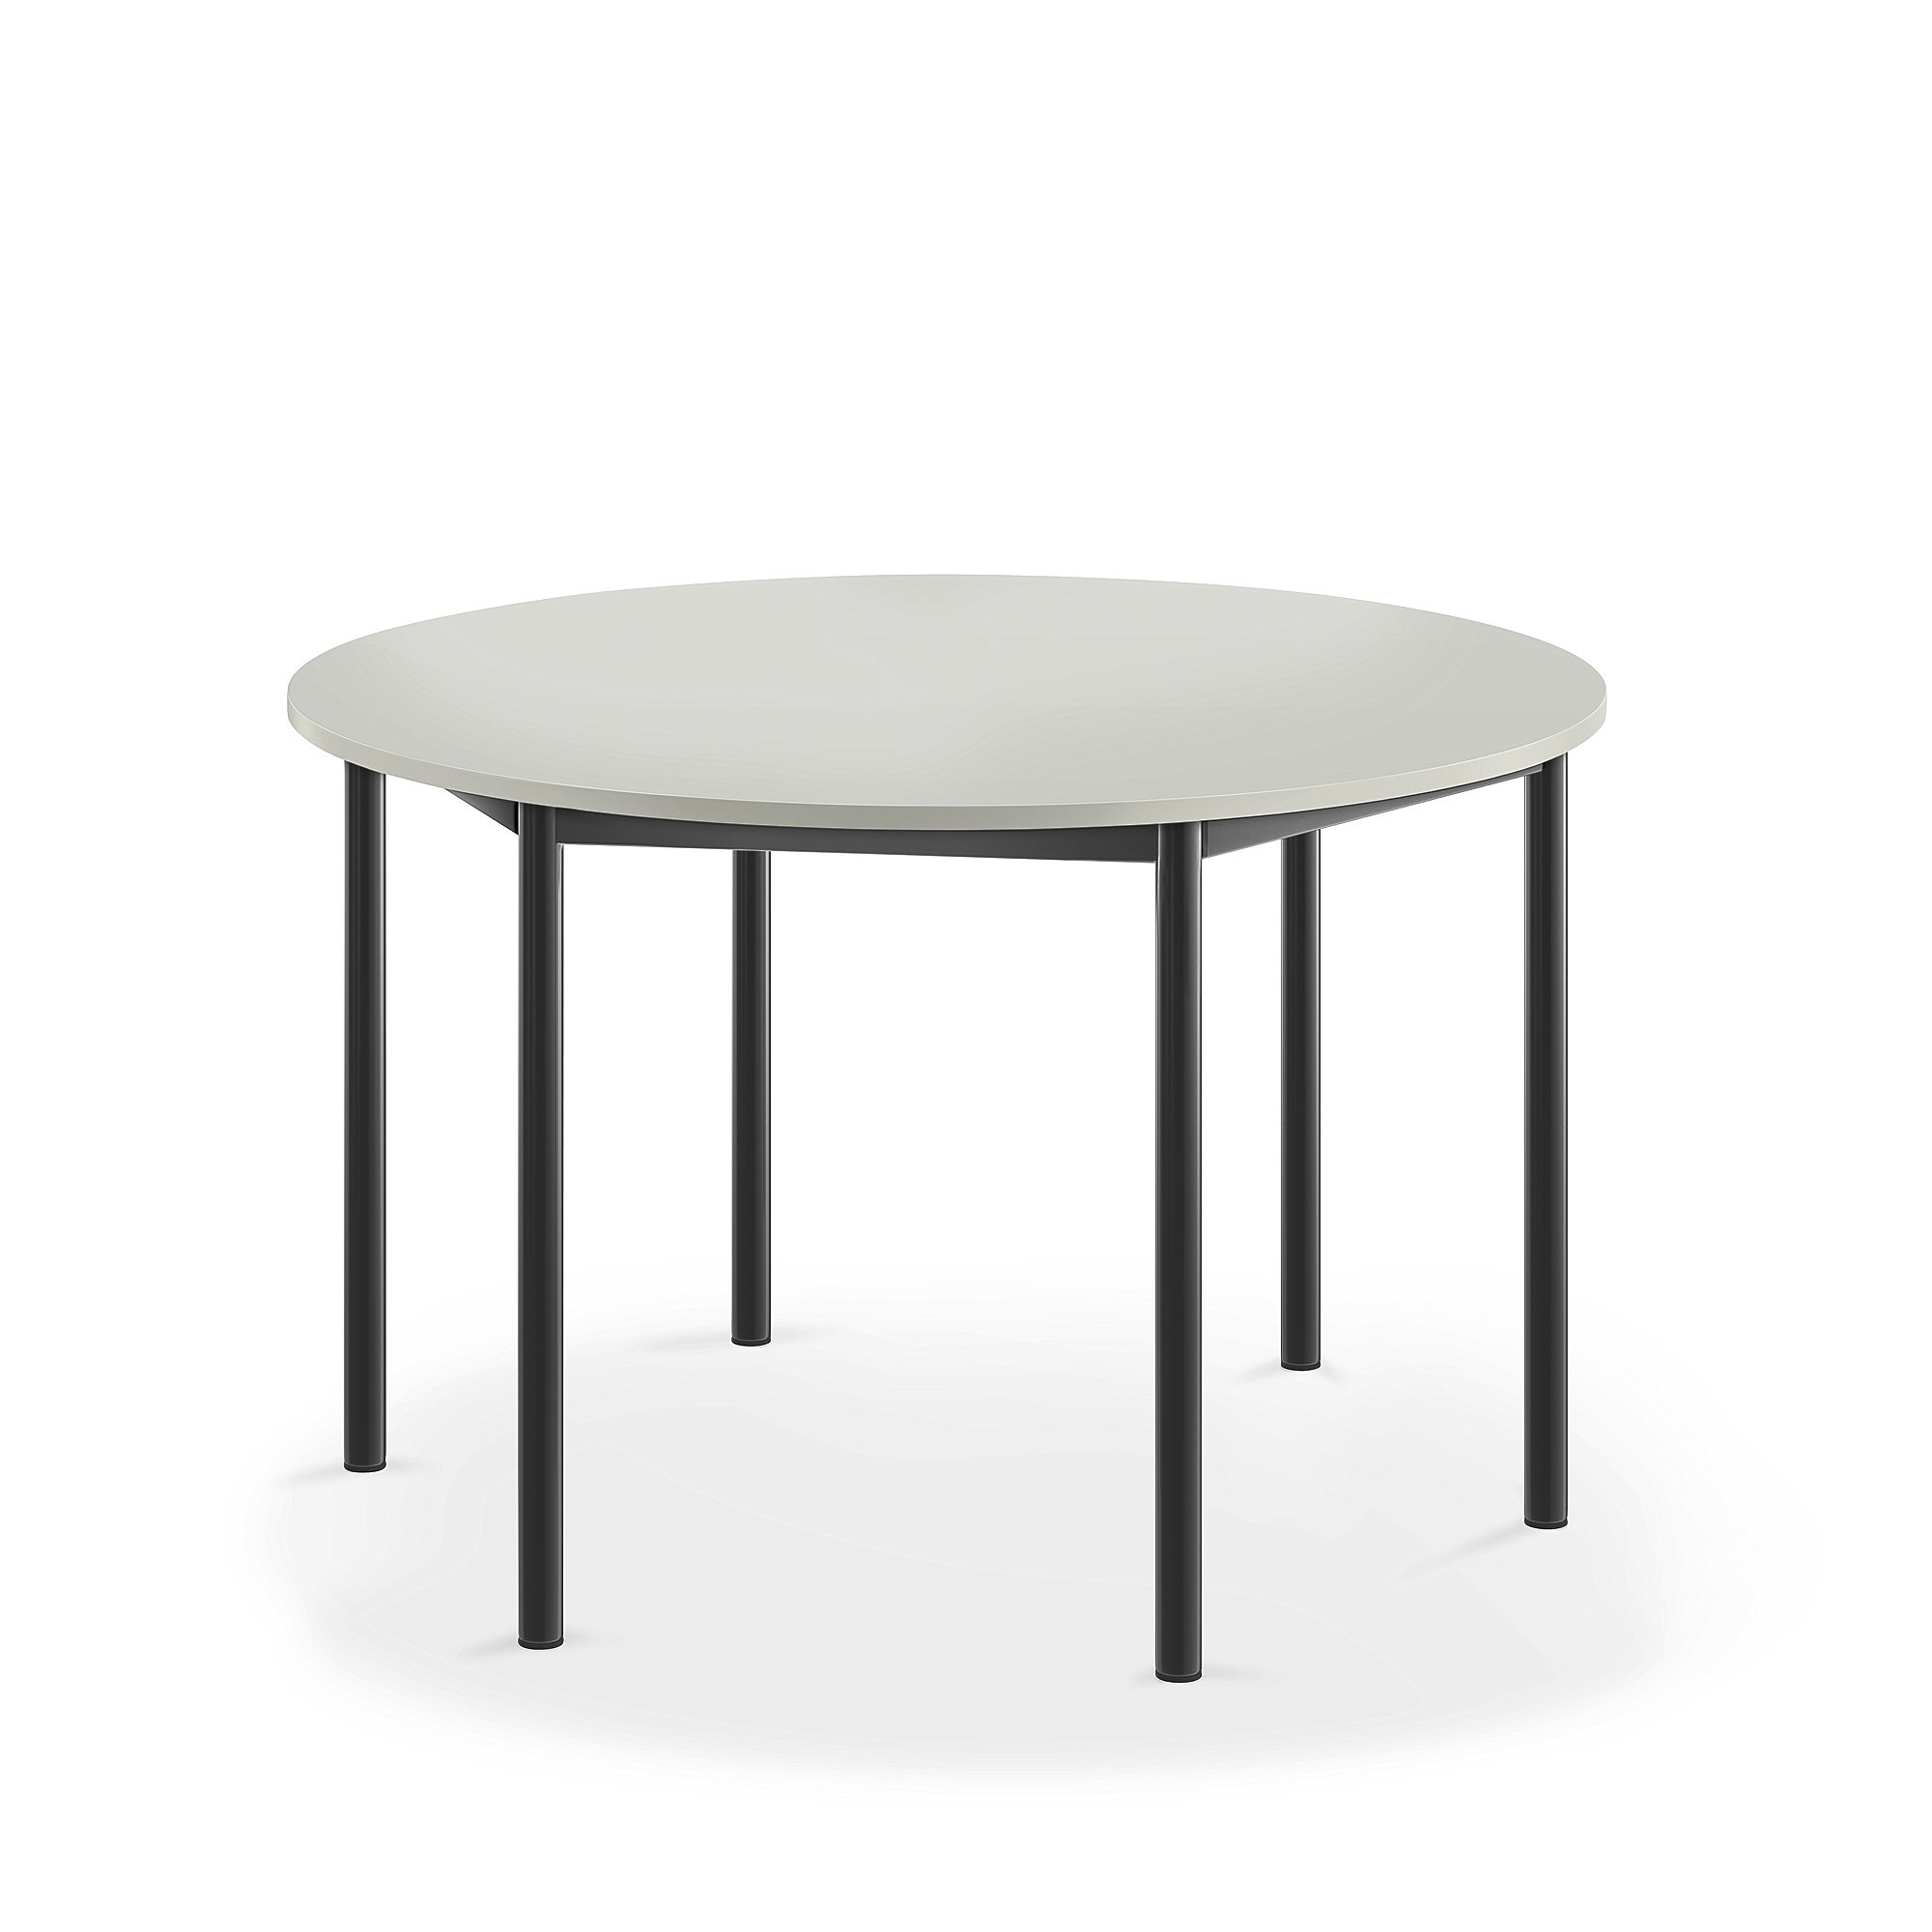 Stůl SONITUS, Ø1200x720 mm, antracitově šedé nohy, HPL deska tlumící hluk, šedá